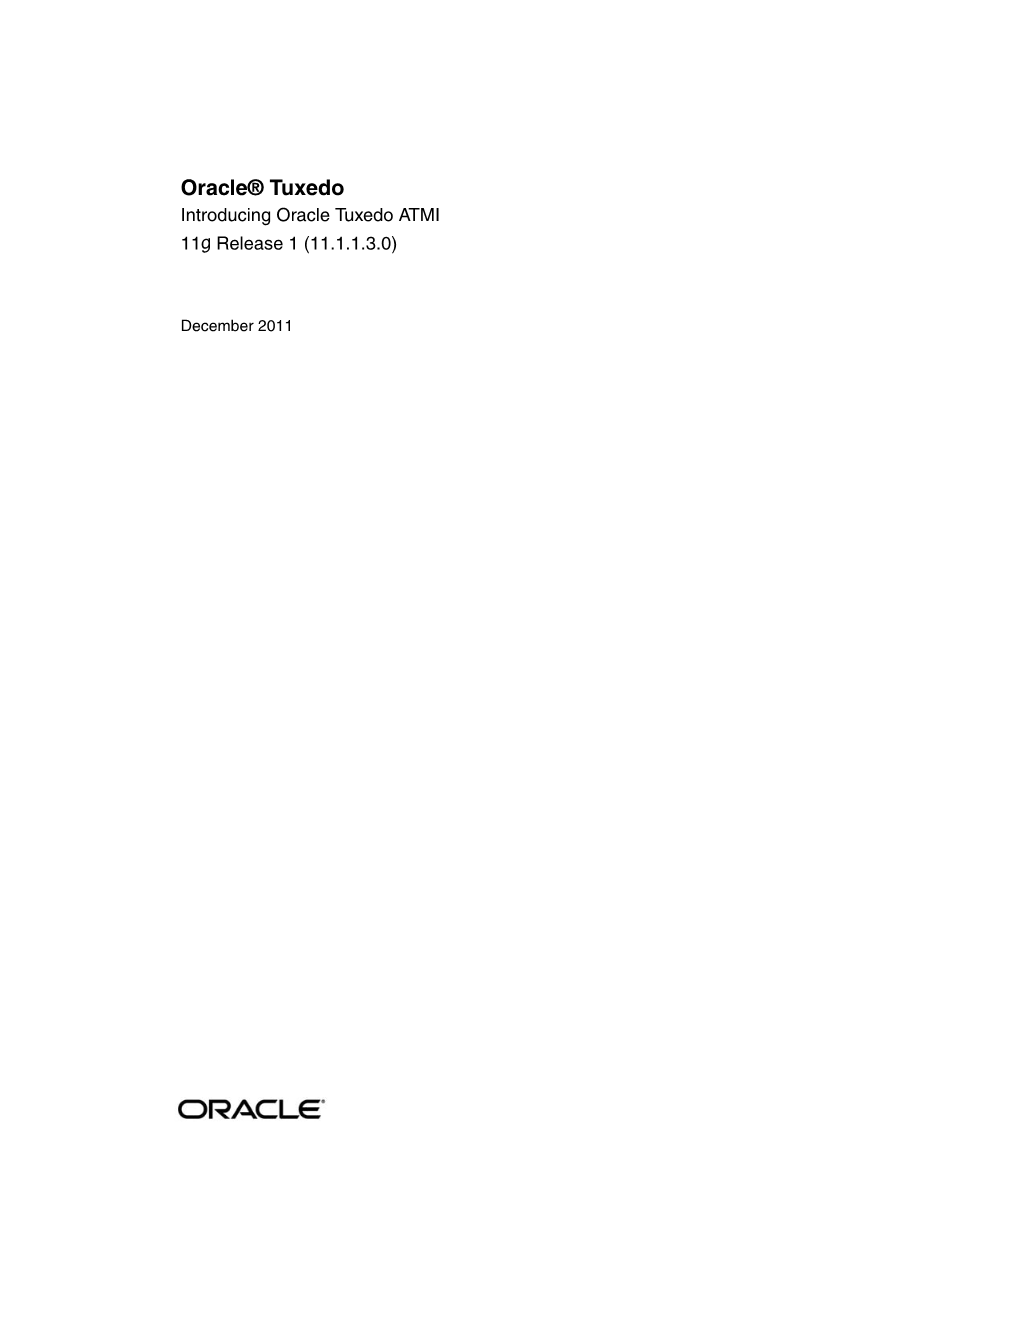 Oracle® Tuxedo Introducing Oracle Tuxedo ATMI 11G Release 1 (11.1.1.3.0)